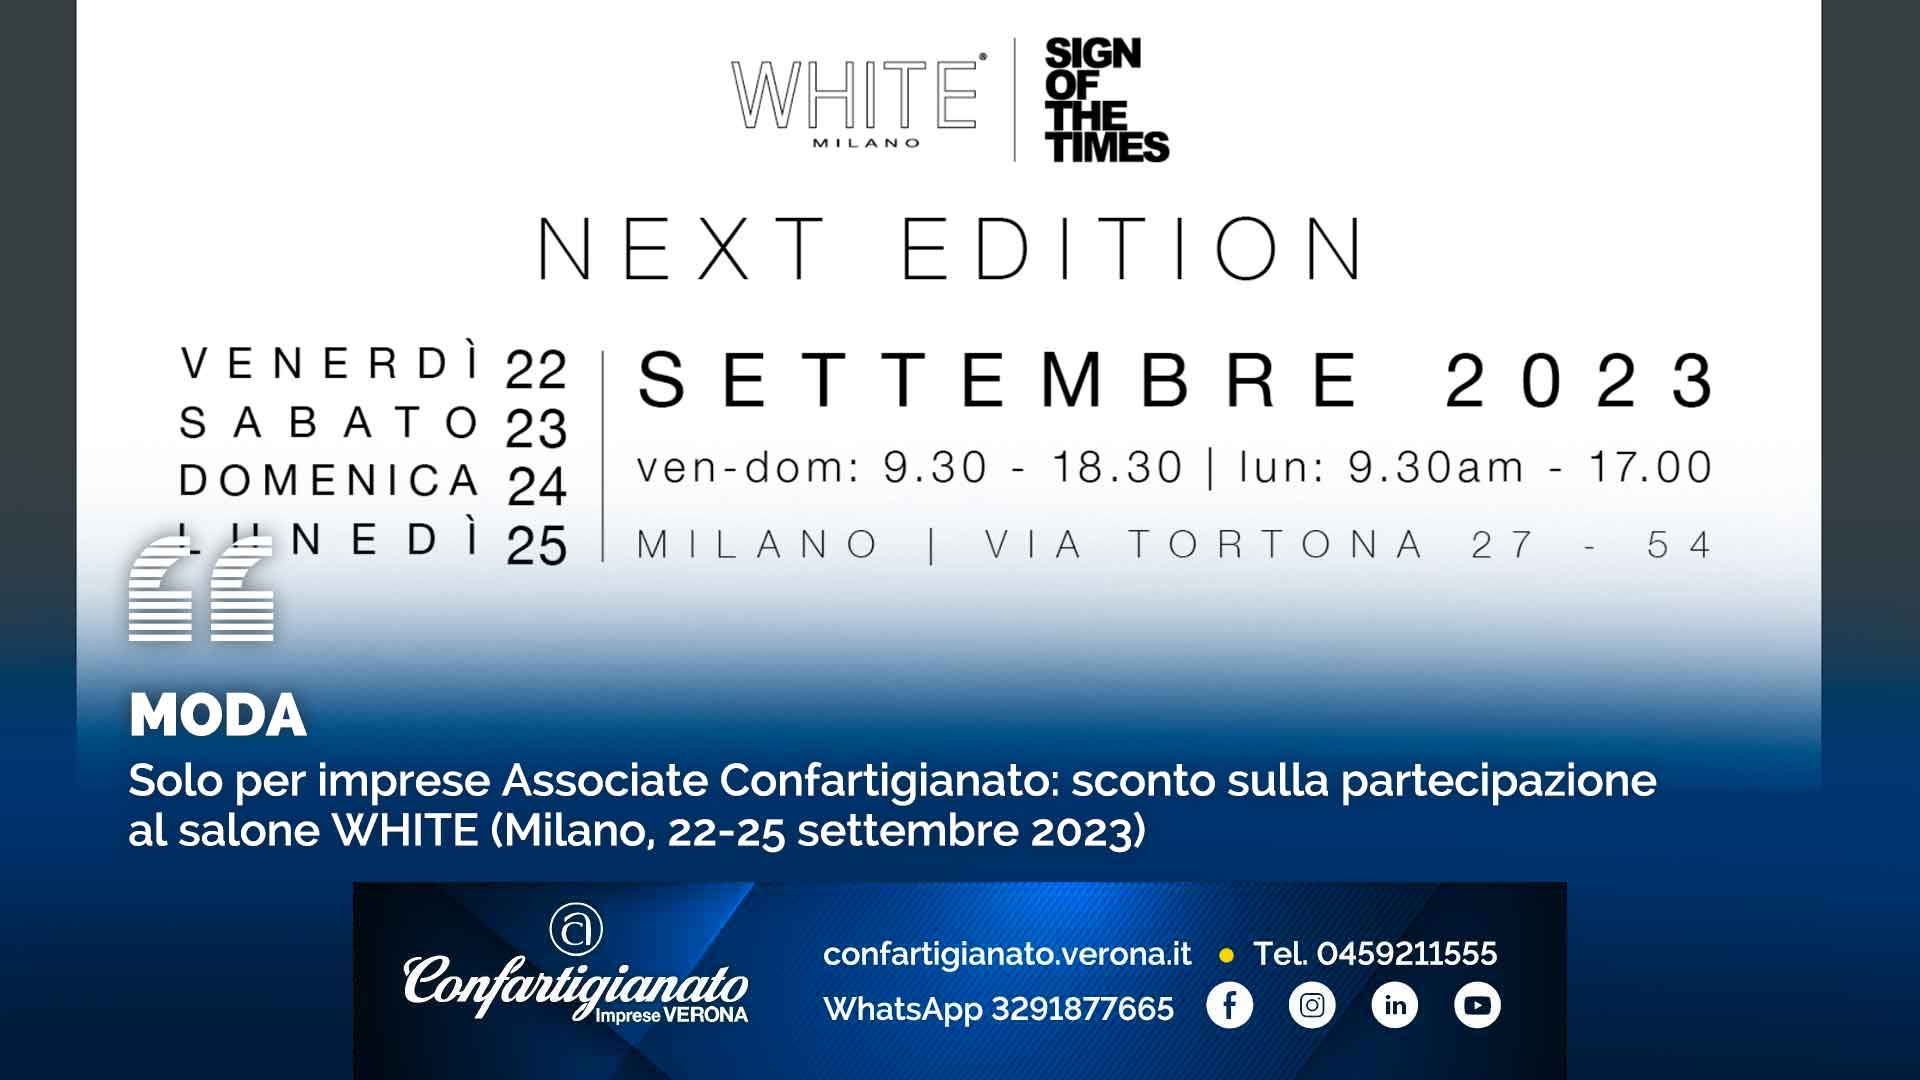 MODA – Solo per imprese Associate Confartigianato: sconto sulla partecipazione al salone WHITE (Milano, 22-25 settembre 2023)